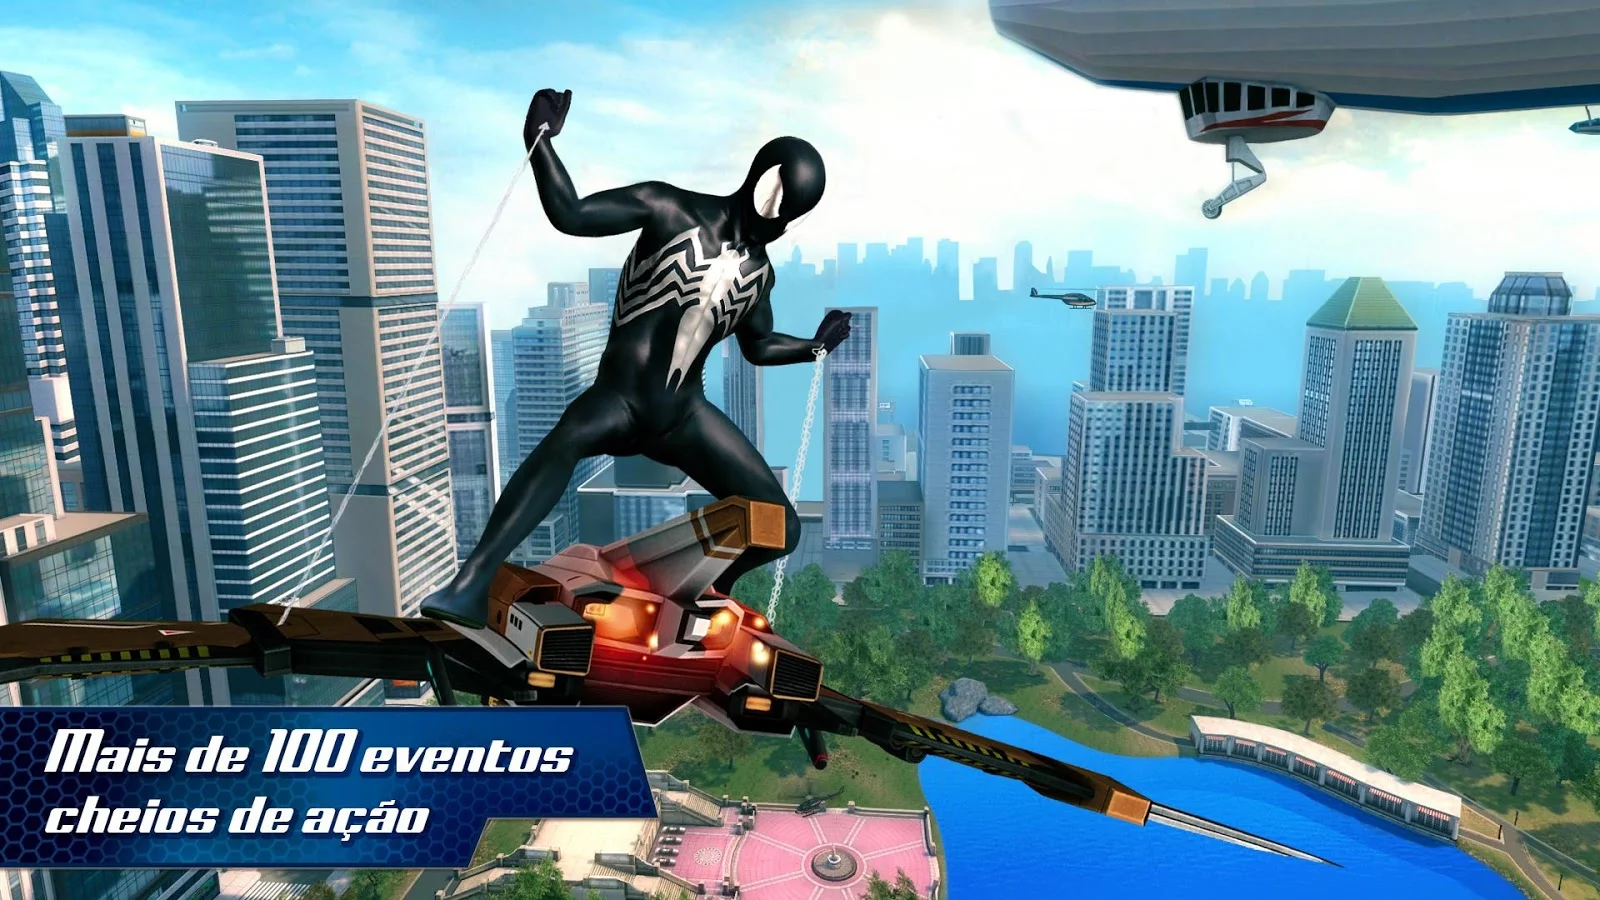 O Espetacular Homem-Aranha 2 - screenshot